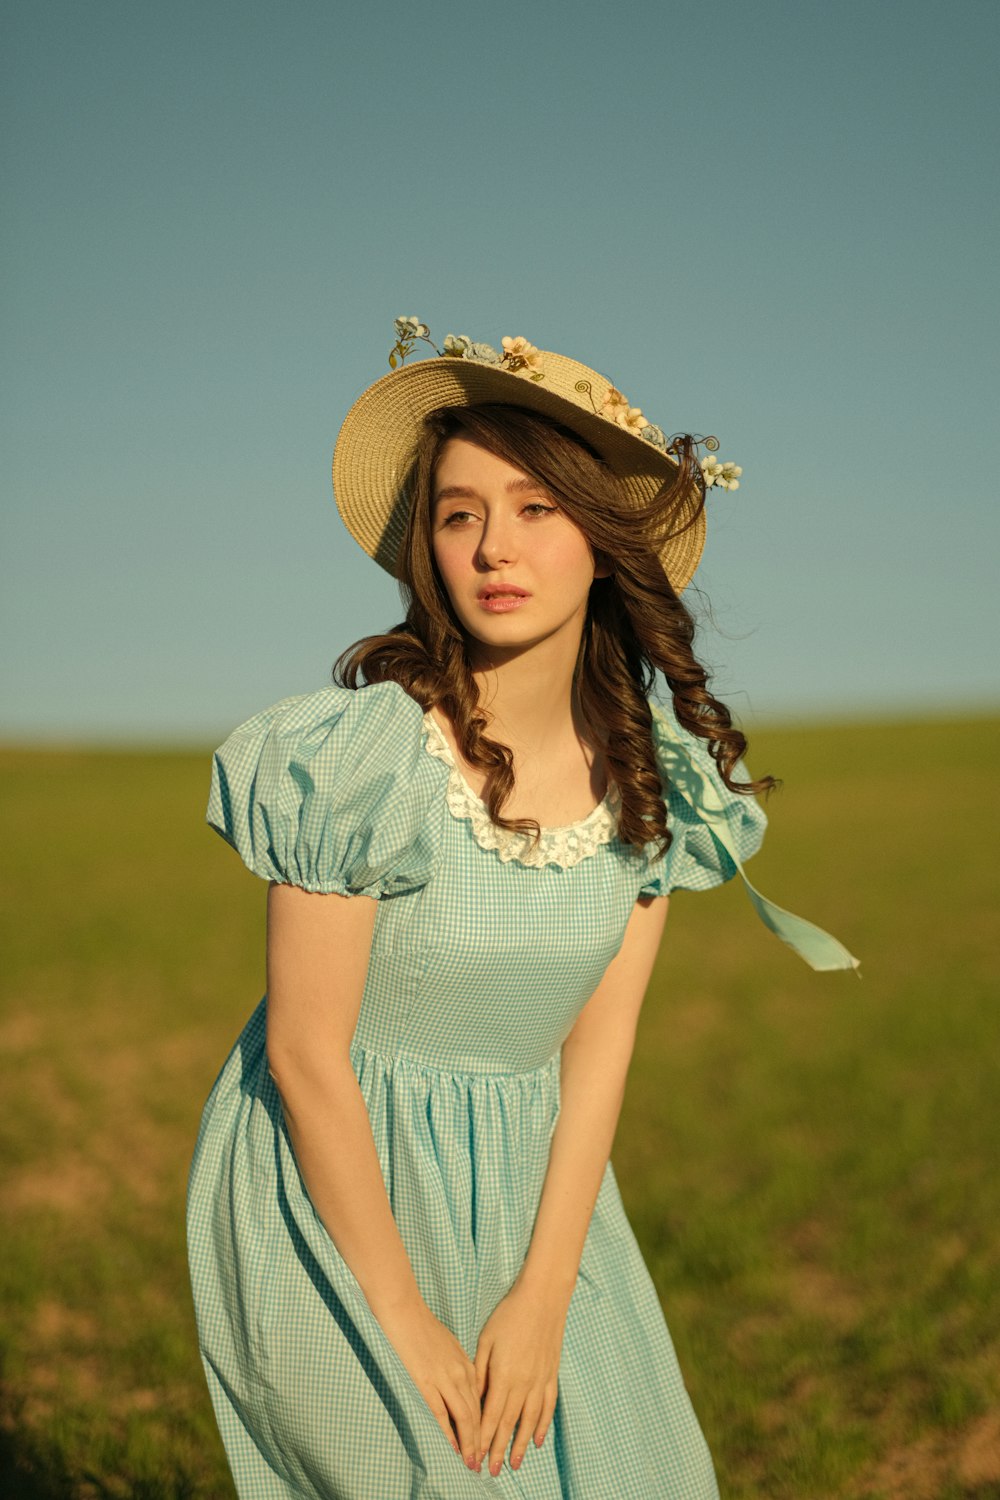 野原に立つドレスと帽子をかぶった女性